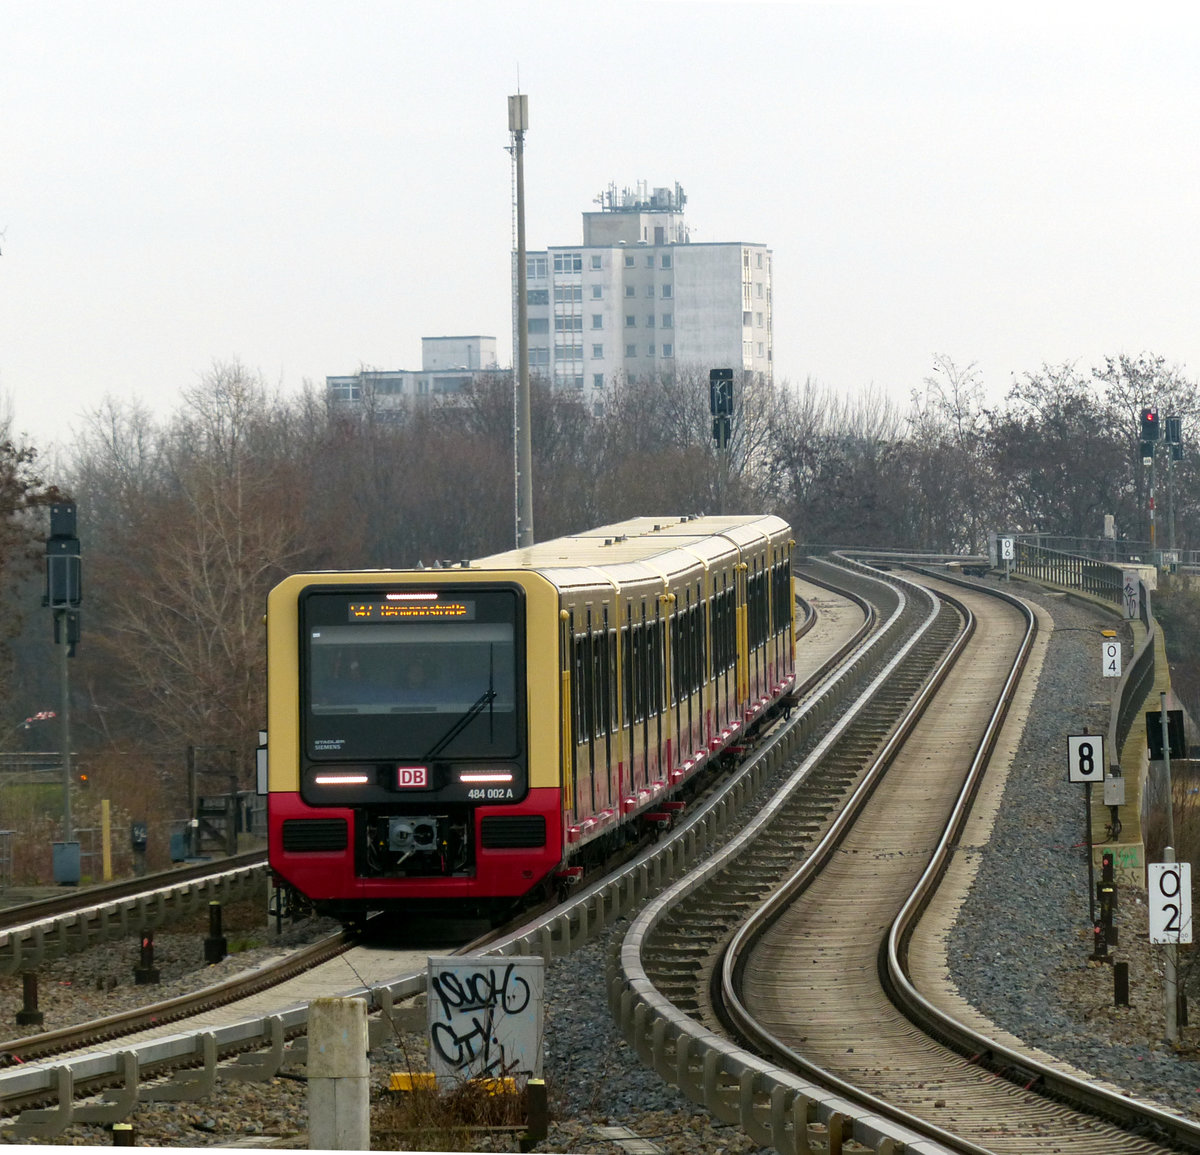 Einfahrt von 484 002A nach Hermannstraße im Bahnhof Neukölln. In Berlin darf man seine Wohnung wegen der Corona-Pandemie nur noch aus triftigem Grund verlassen - eine neue S-Bahn-Baureihe scheint für viele, mich eingeschlossen, ein solcher gewesen zu sein. :-) 2.1.2021